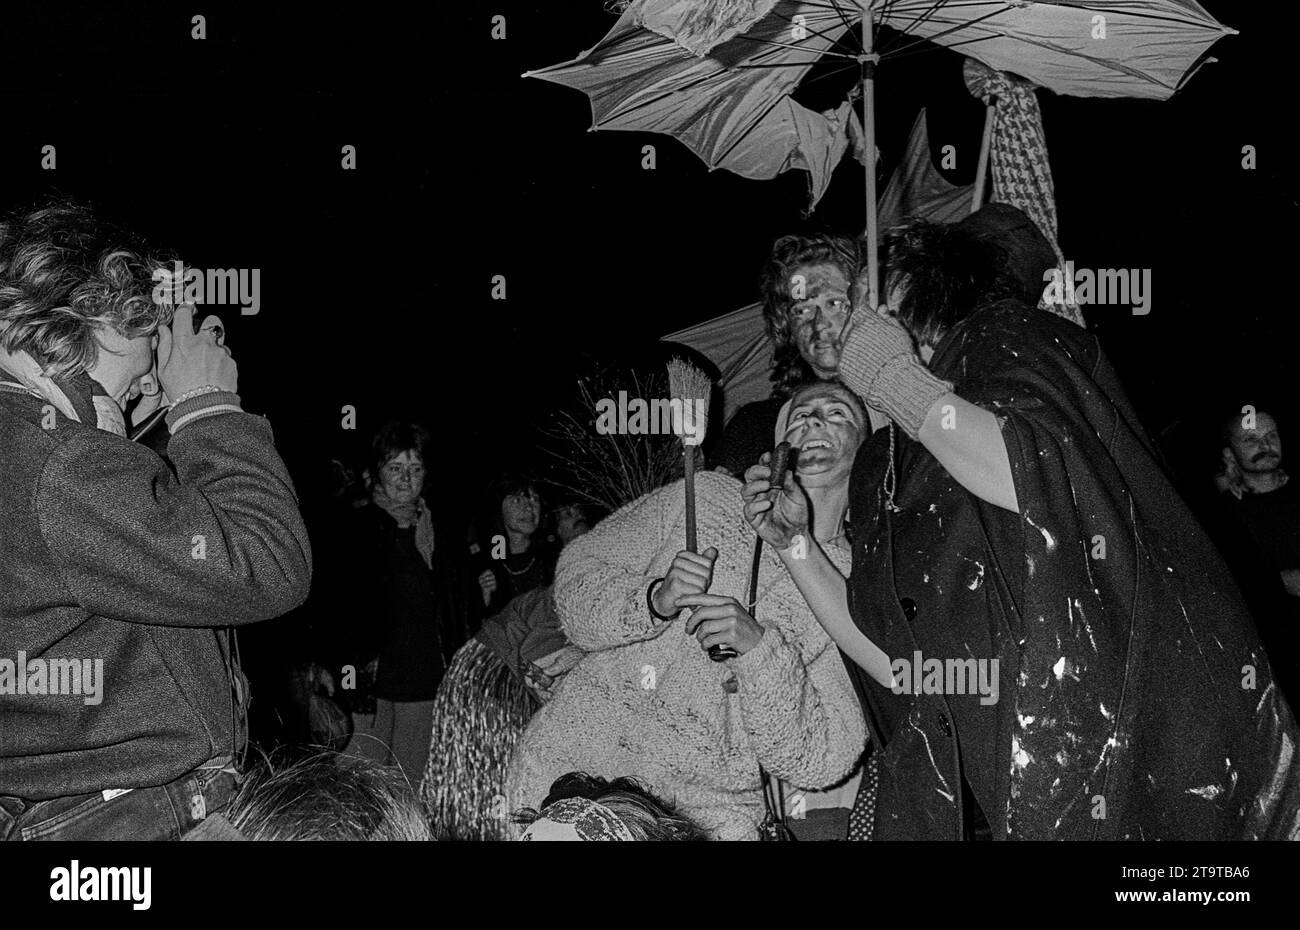 Walpurgis DDR, Berlin, 30.04.1990, 1. Walpurgisnacht auf dem Prenzlauer Berg am Wasserturm, Hexen, Â *** Walpurgis GDR, Berlin, 30 04 1990, 1 Walpurgis night on Prenzlauer Berg at the water tower, witches, Â Credit: Imago/Alamy Live News Stock Photo